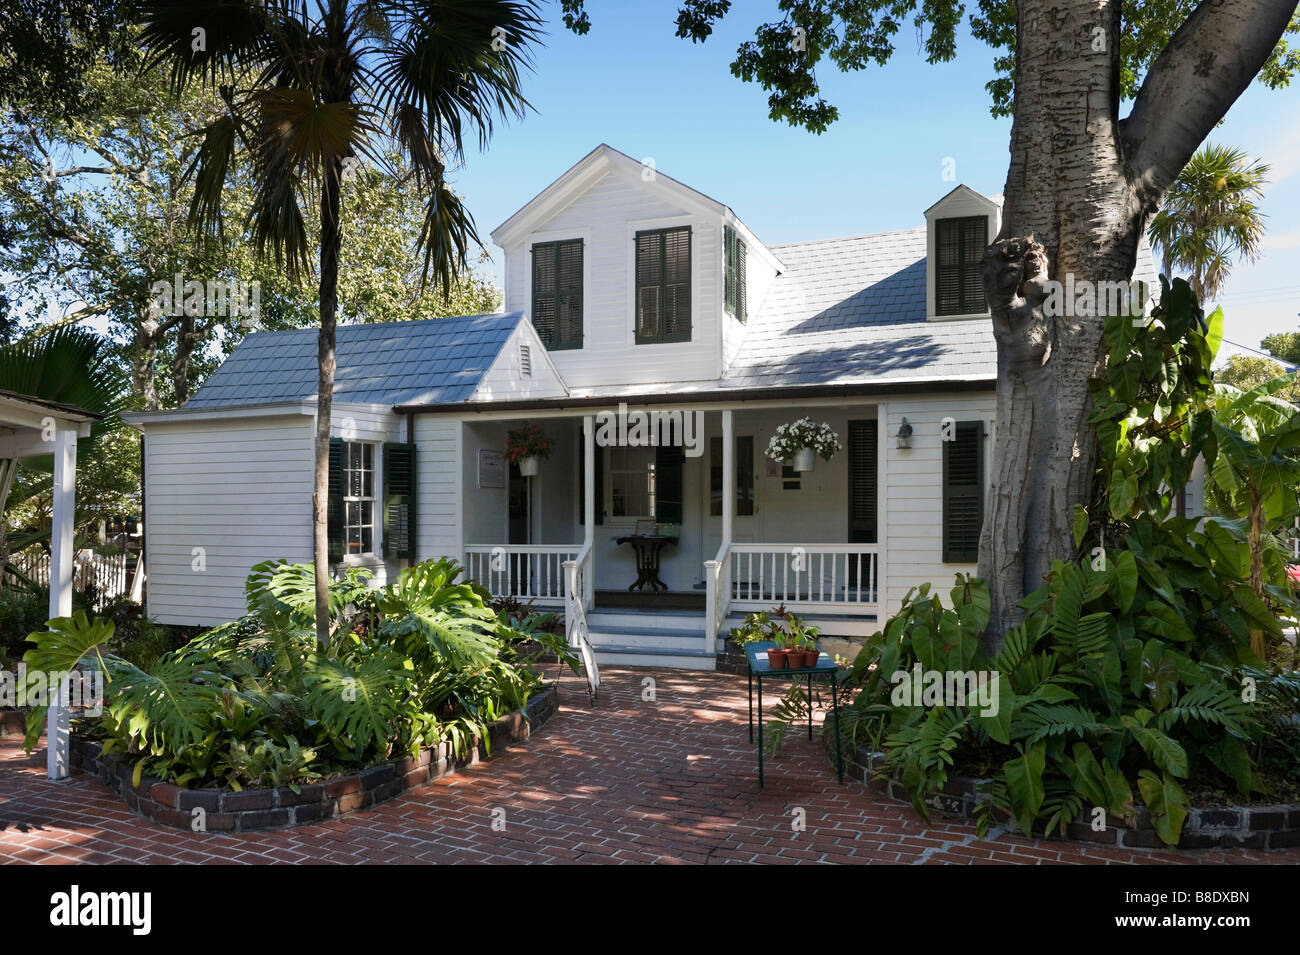 La casa más antigua de Key West, que datan de alrededor de 1829, Duval Street, Key West, Florida Keys, EE.UU. Foto de stock